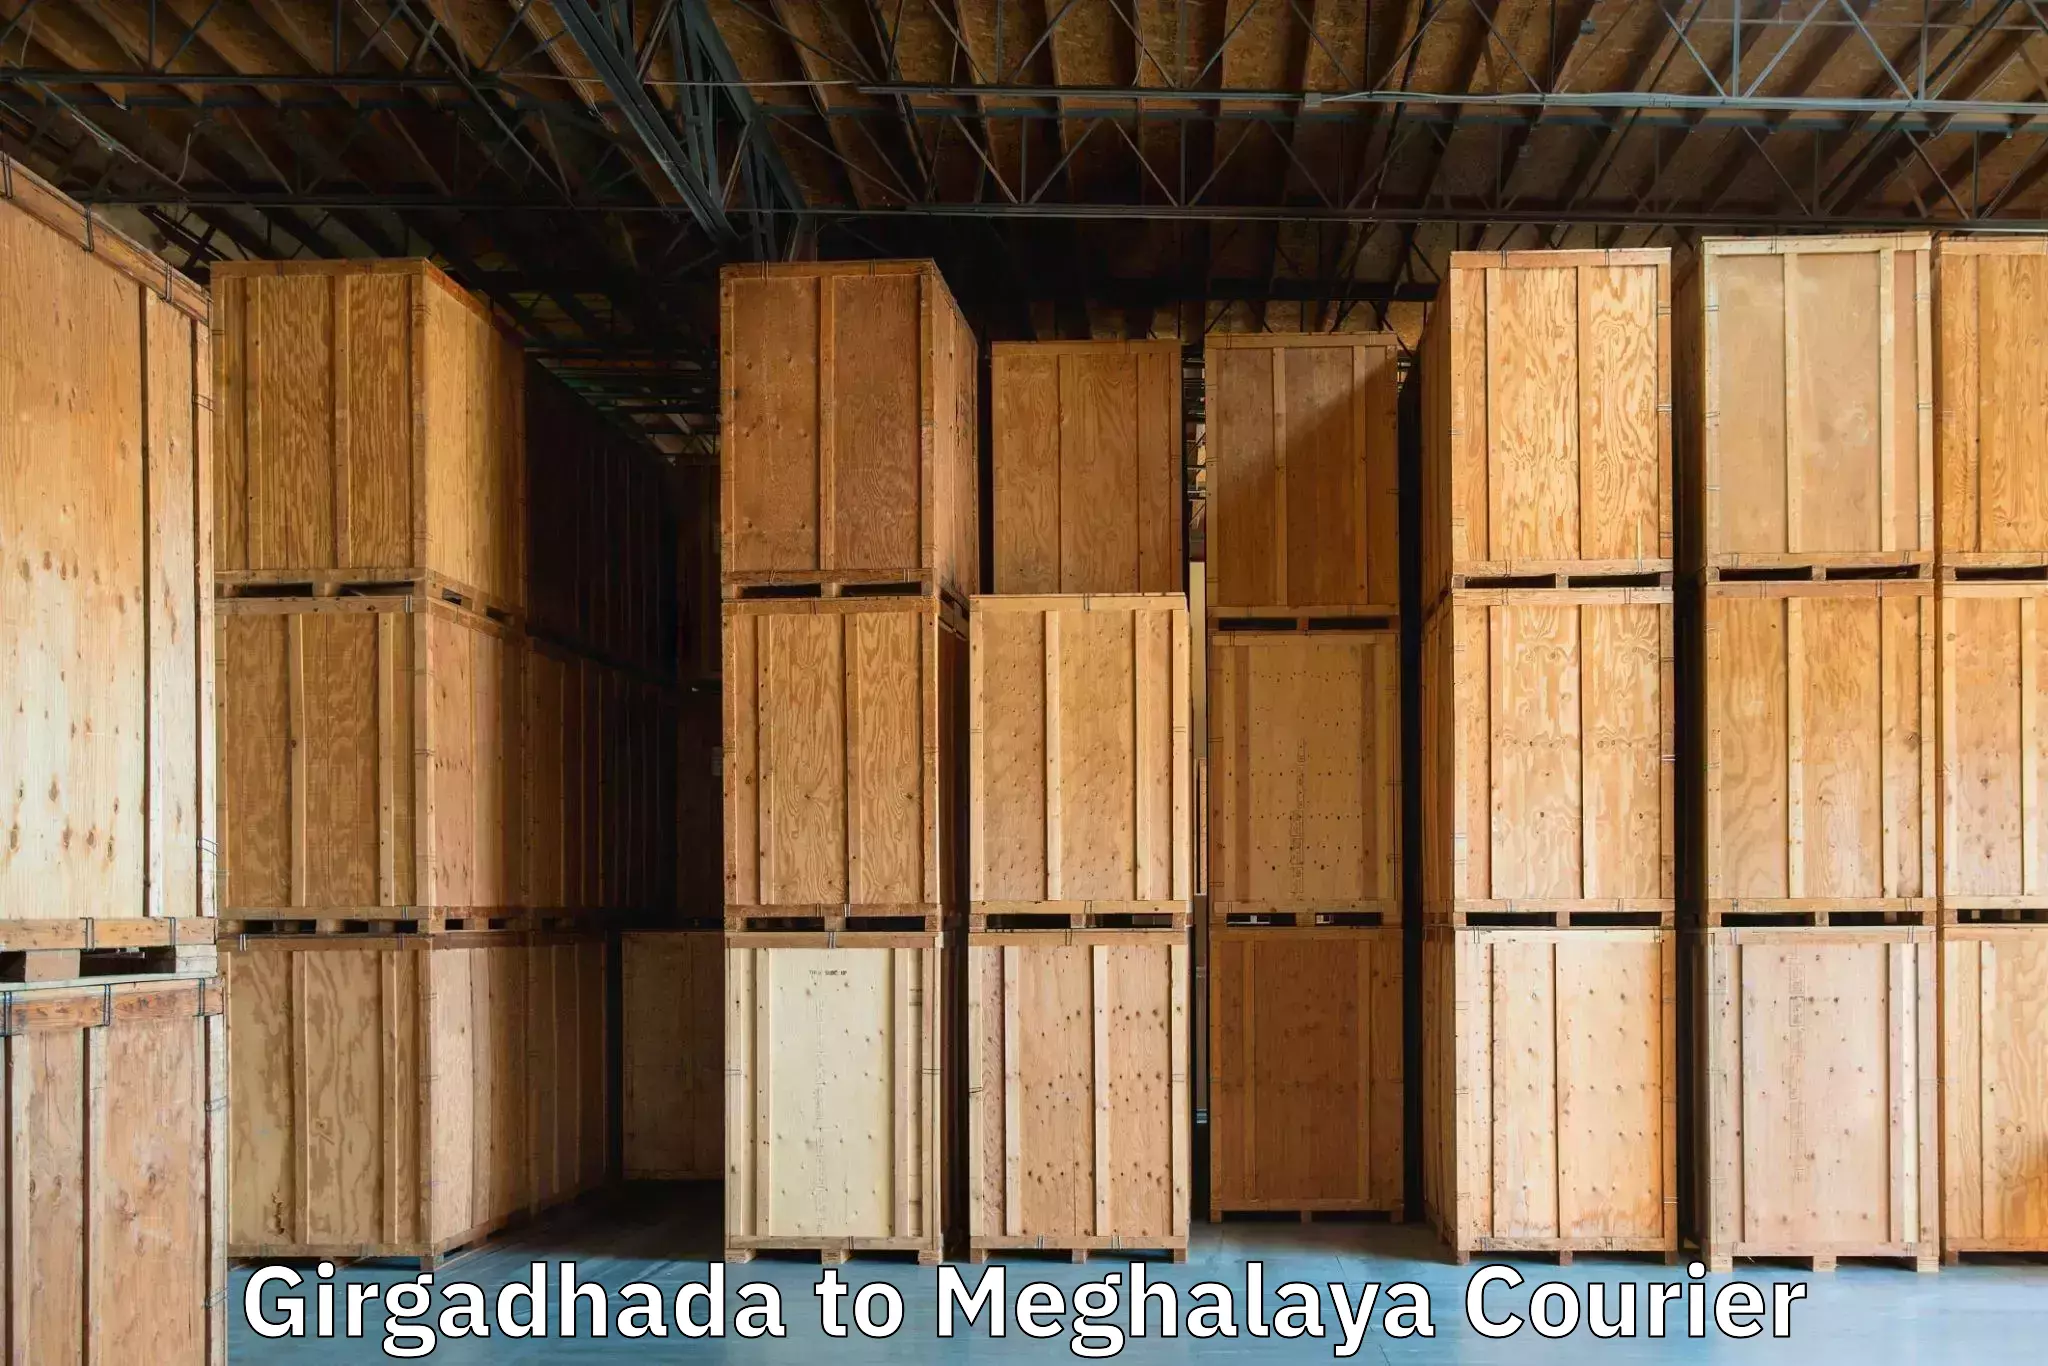 Airport luggage delivery Girgadhada to Meghalaya